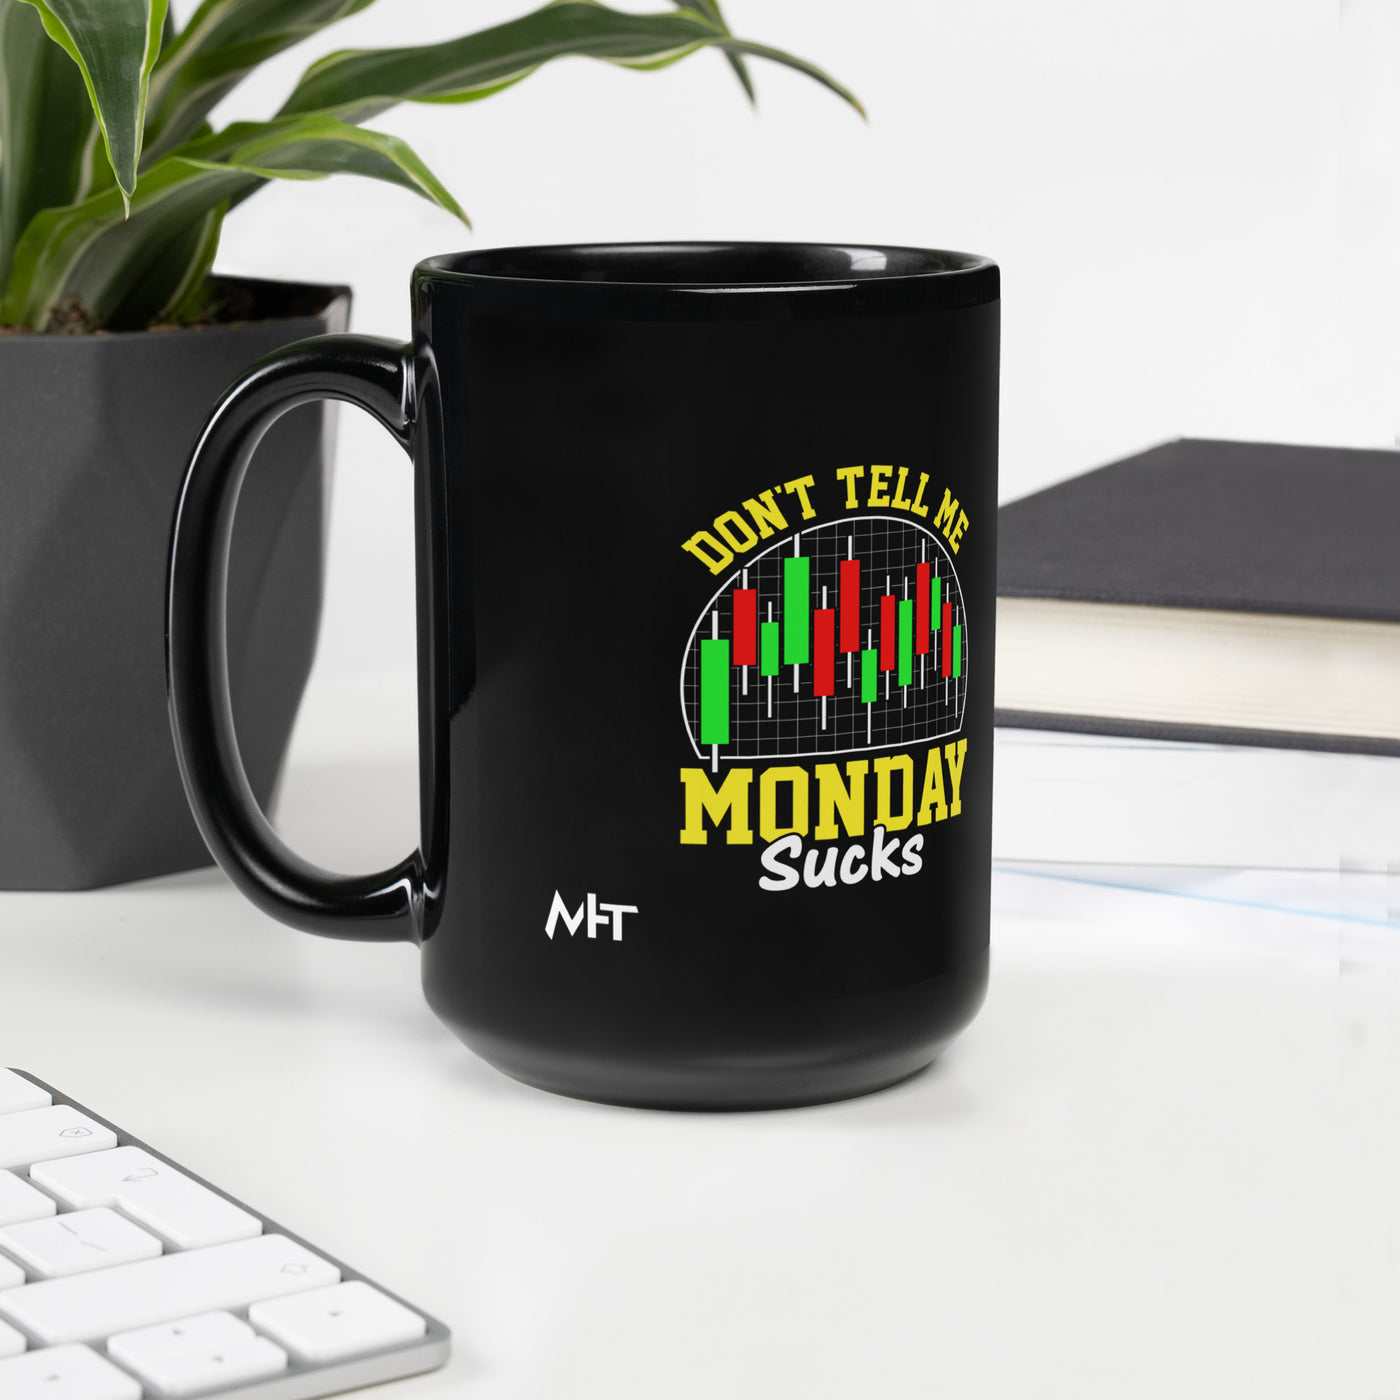 Don't Tell me Monday Sucks - Mug